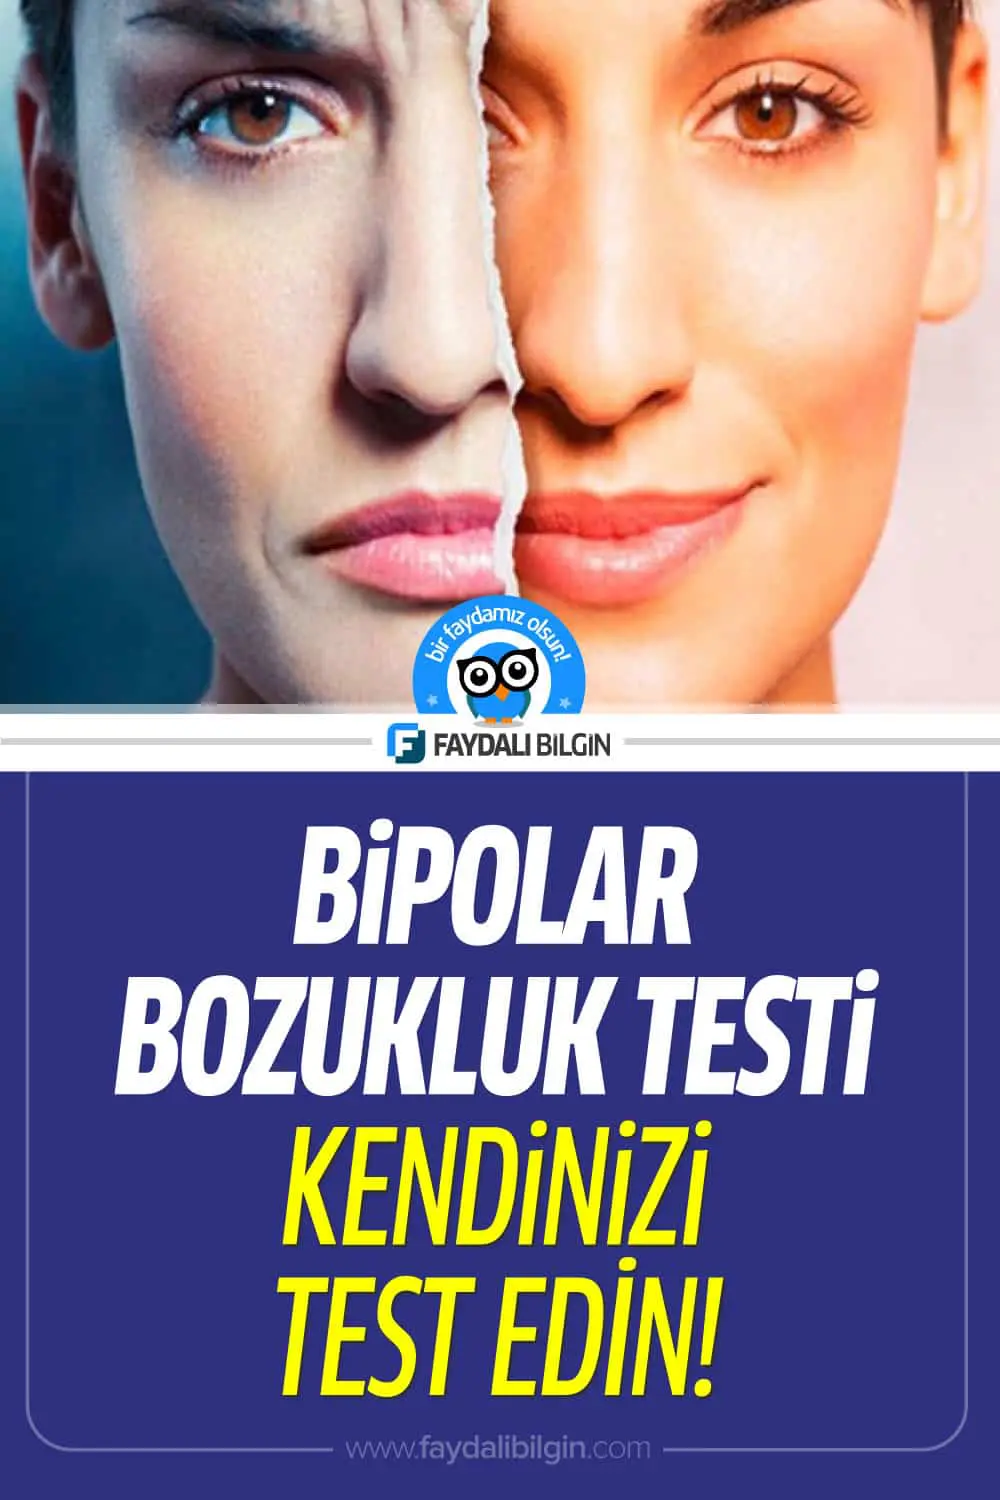 bipolar bozukluk testi nasıl yapılır?